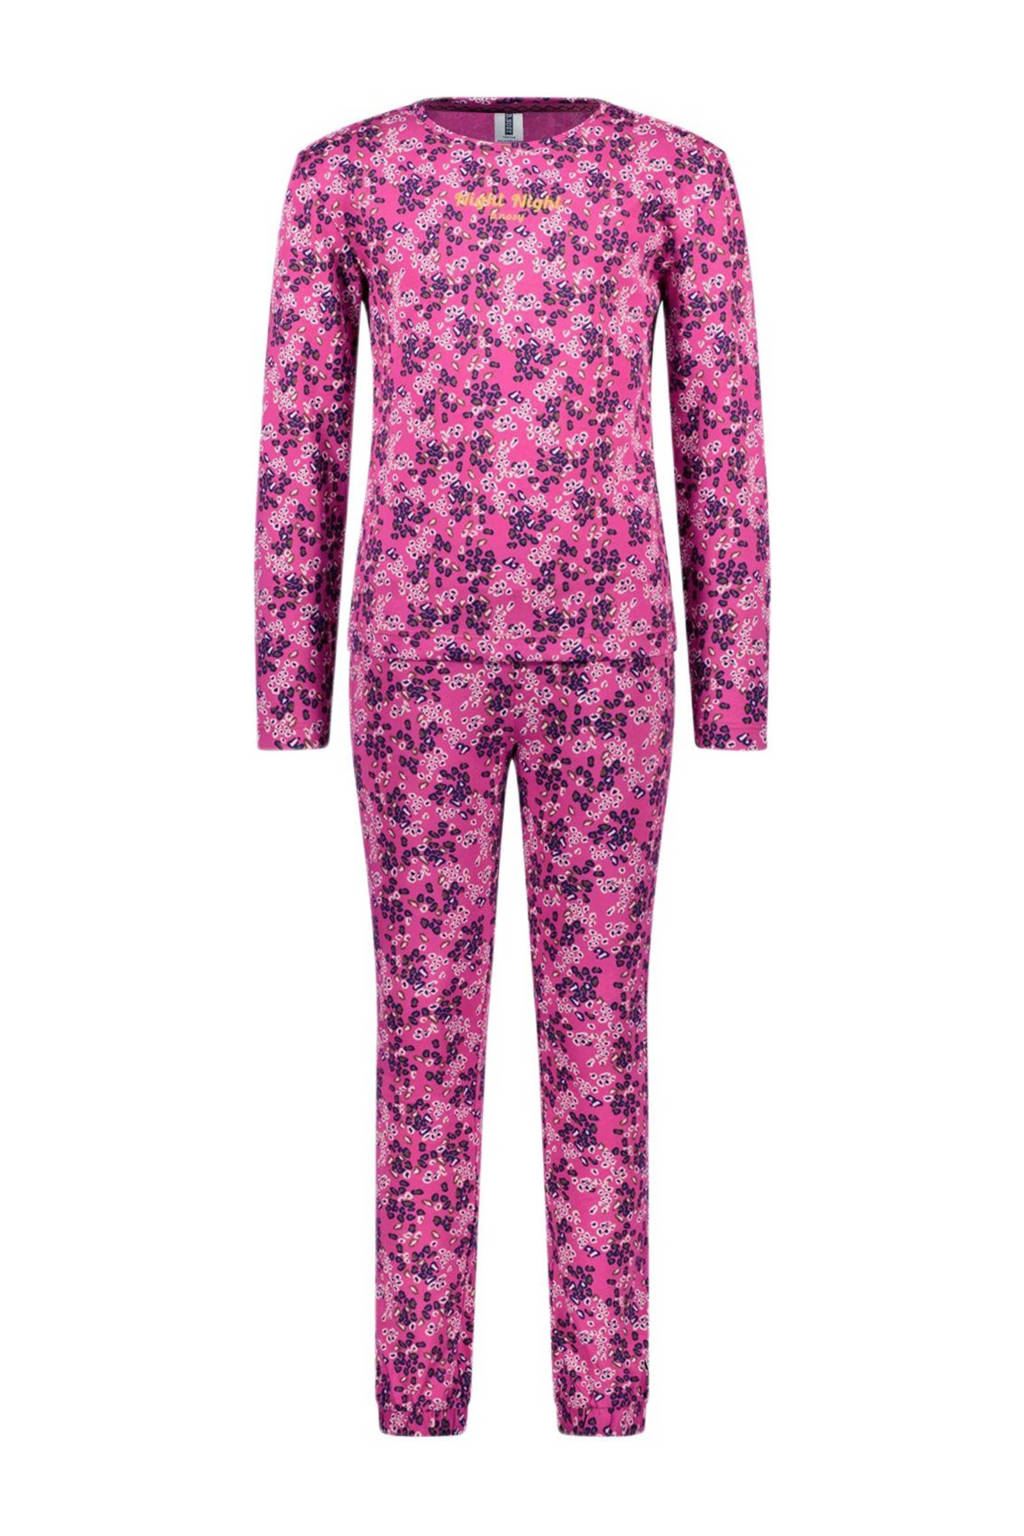 pyjama B. a SLEEP met all over print velroze/paars